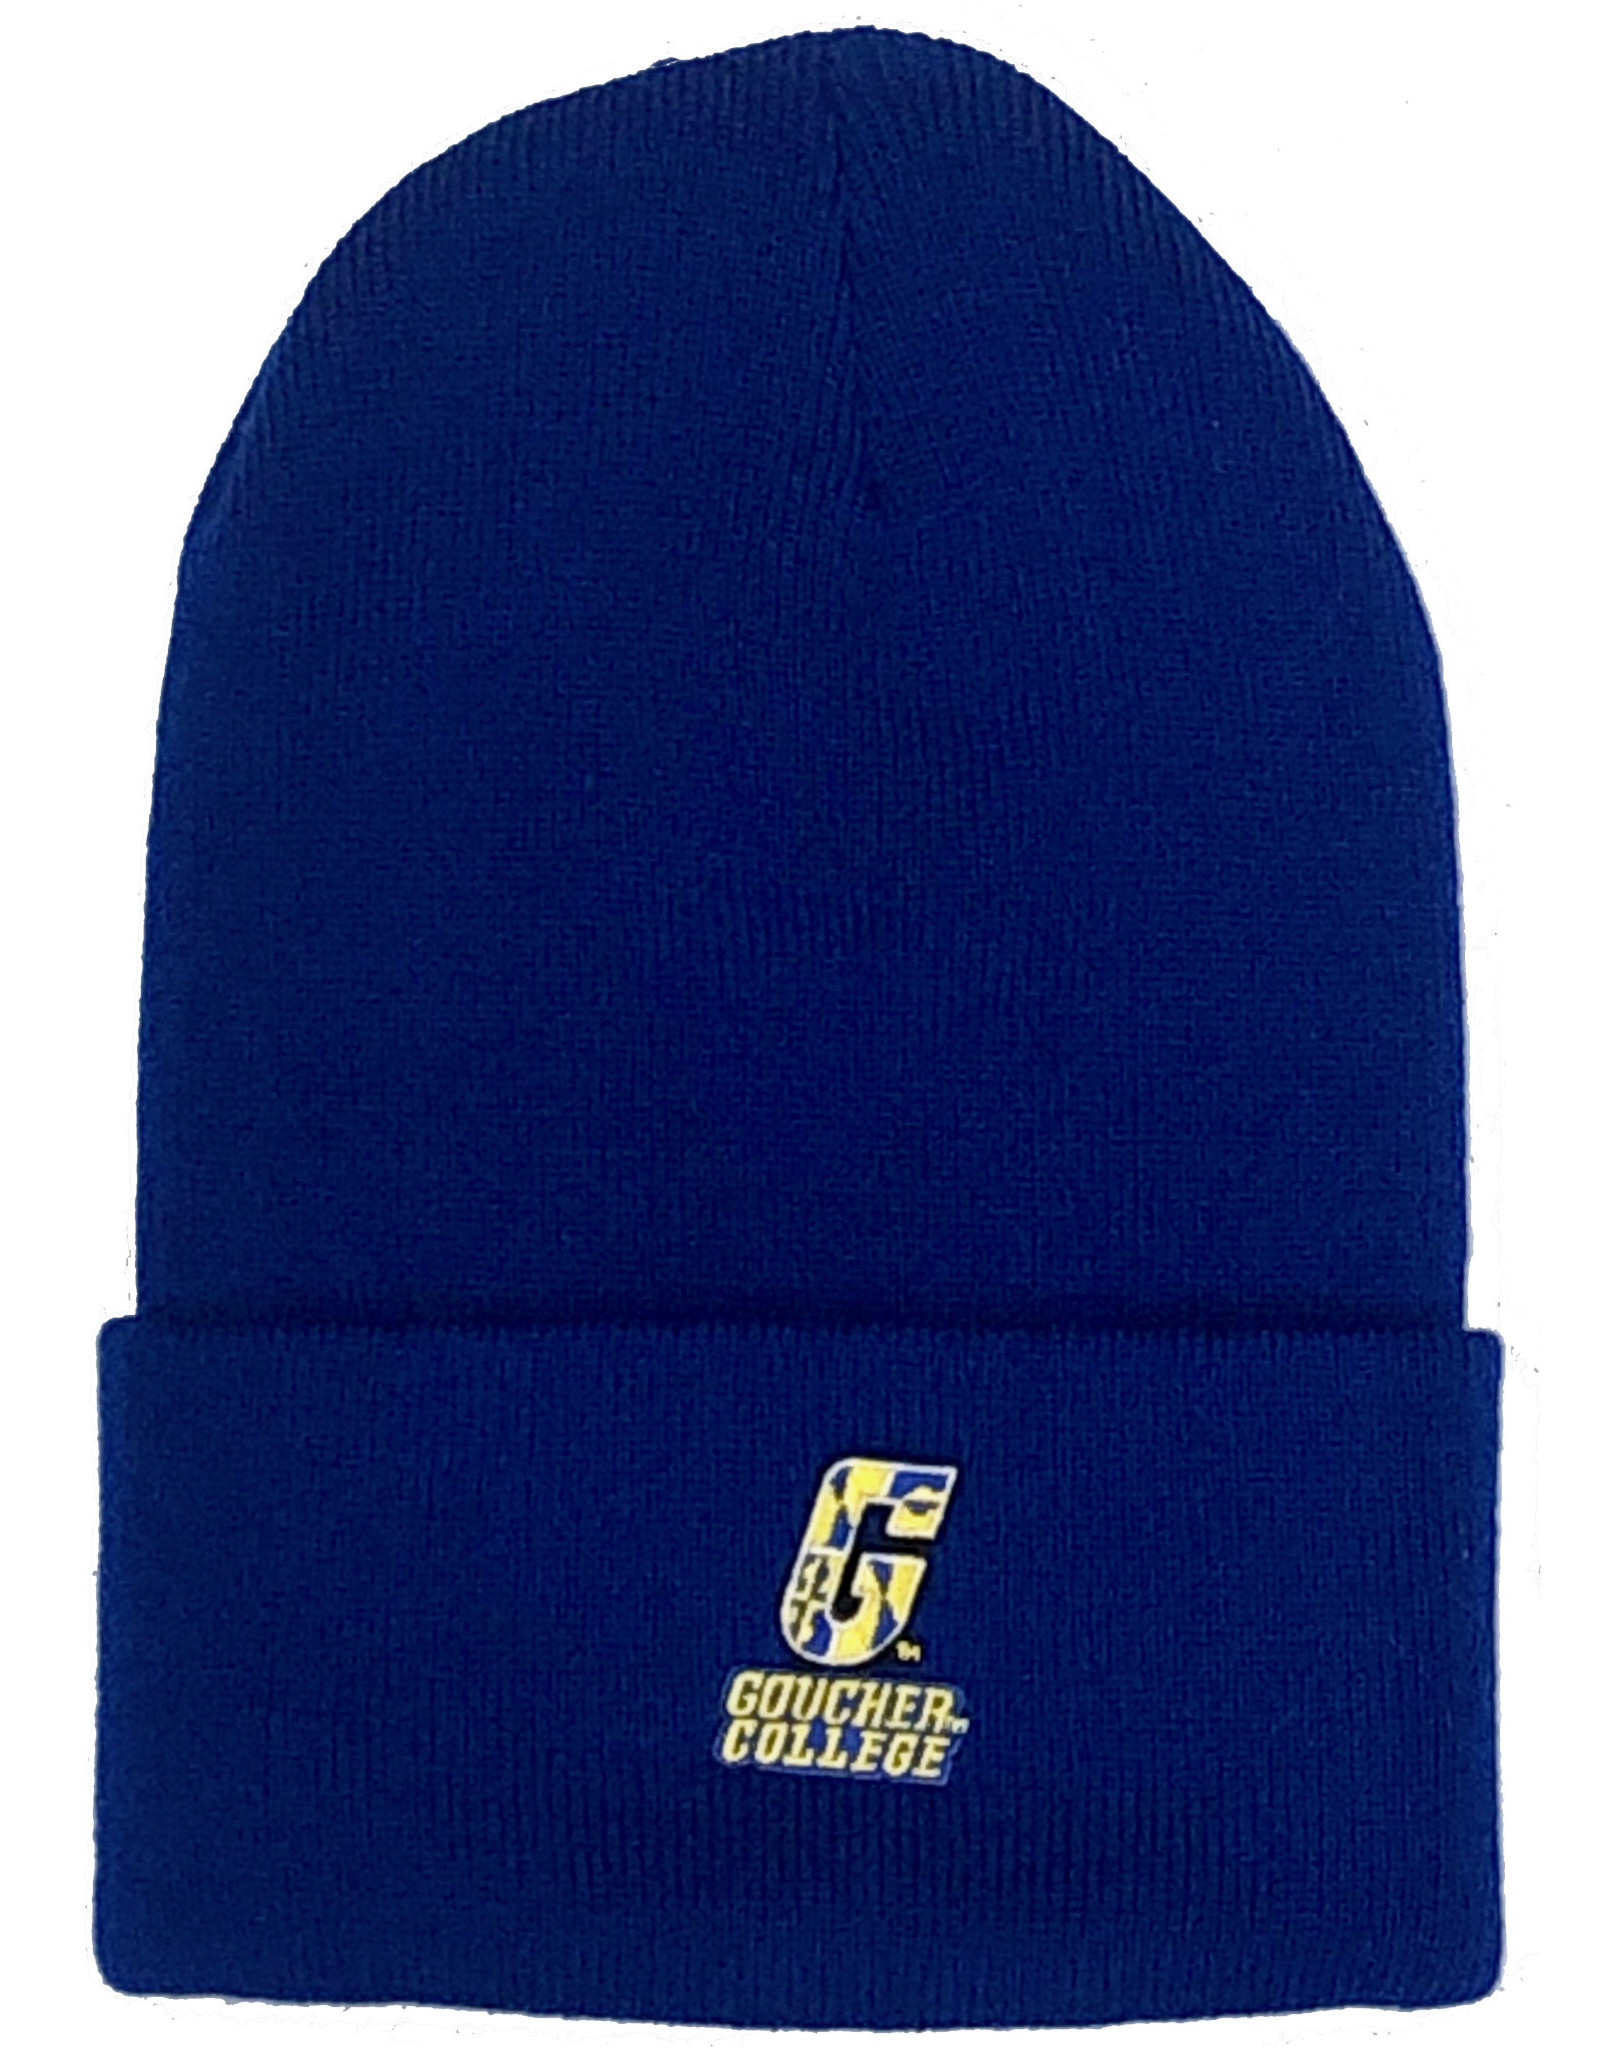 LOGOFIT North Pole "Goucher College" Knit Cuff Hat